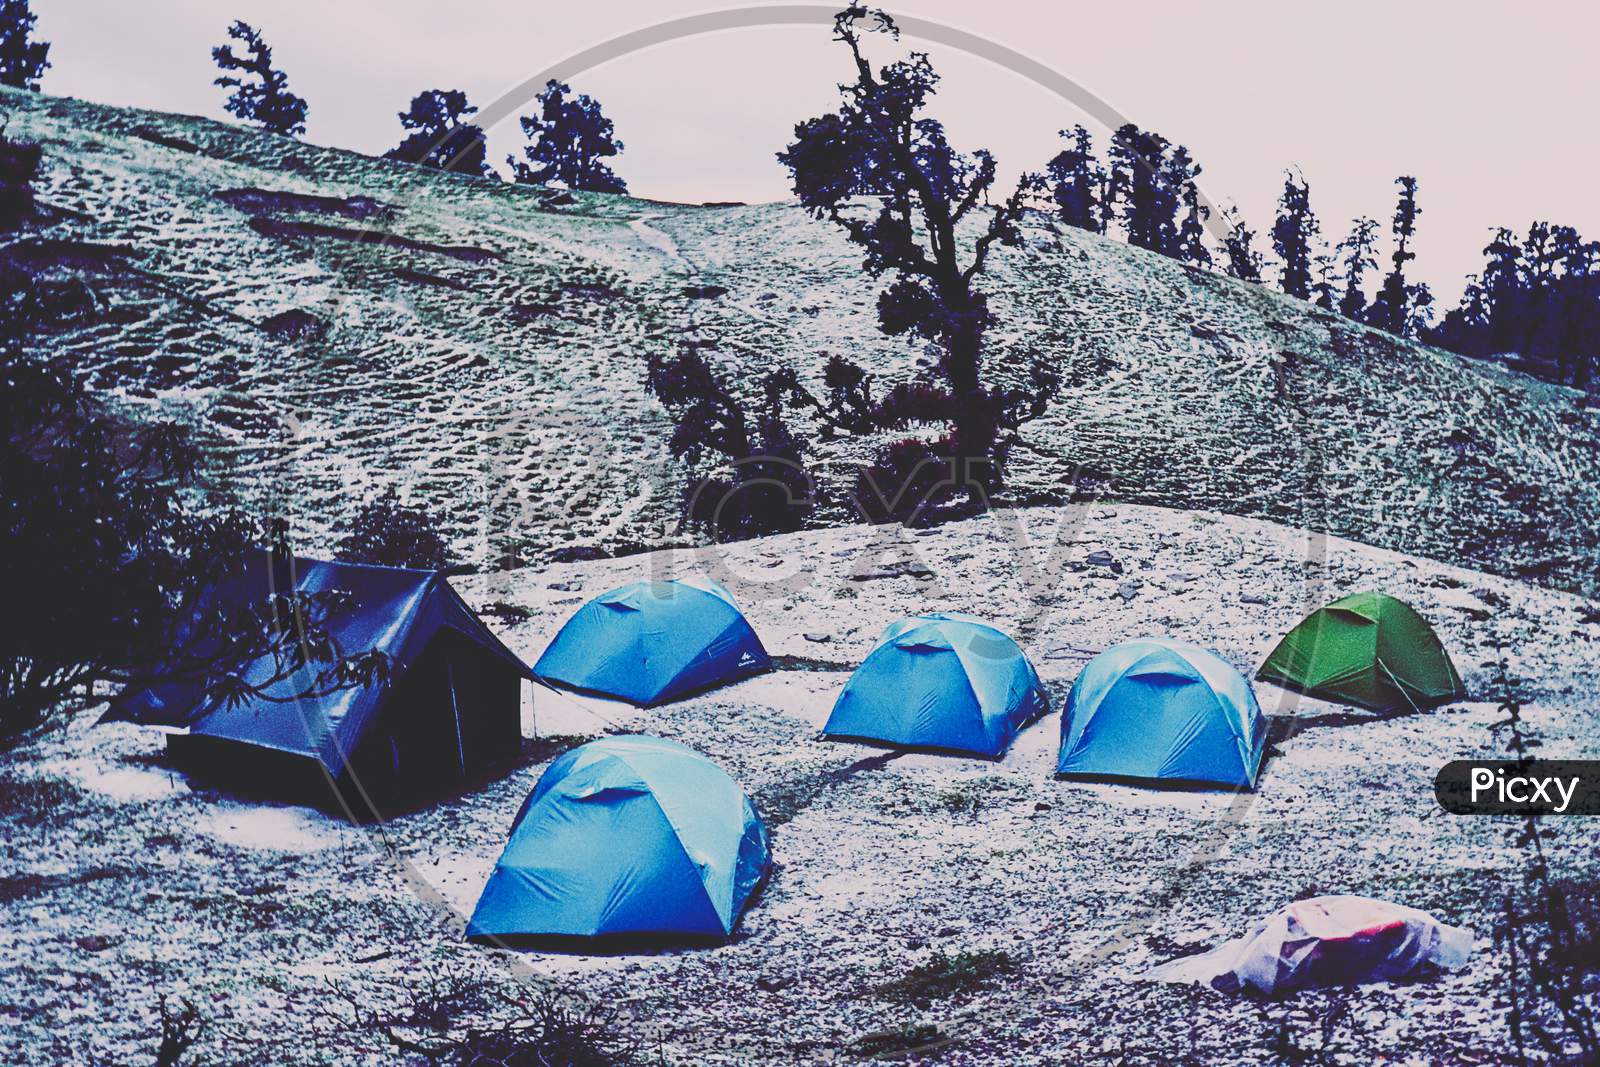 A campsite after a hailstorm